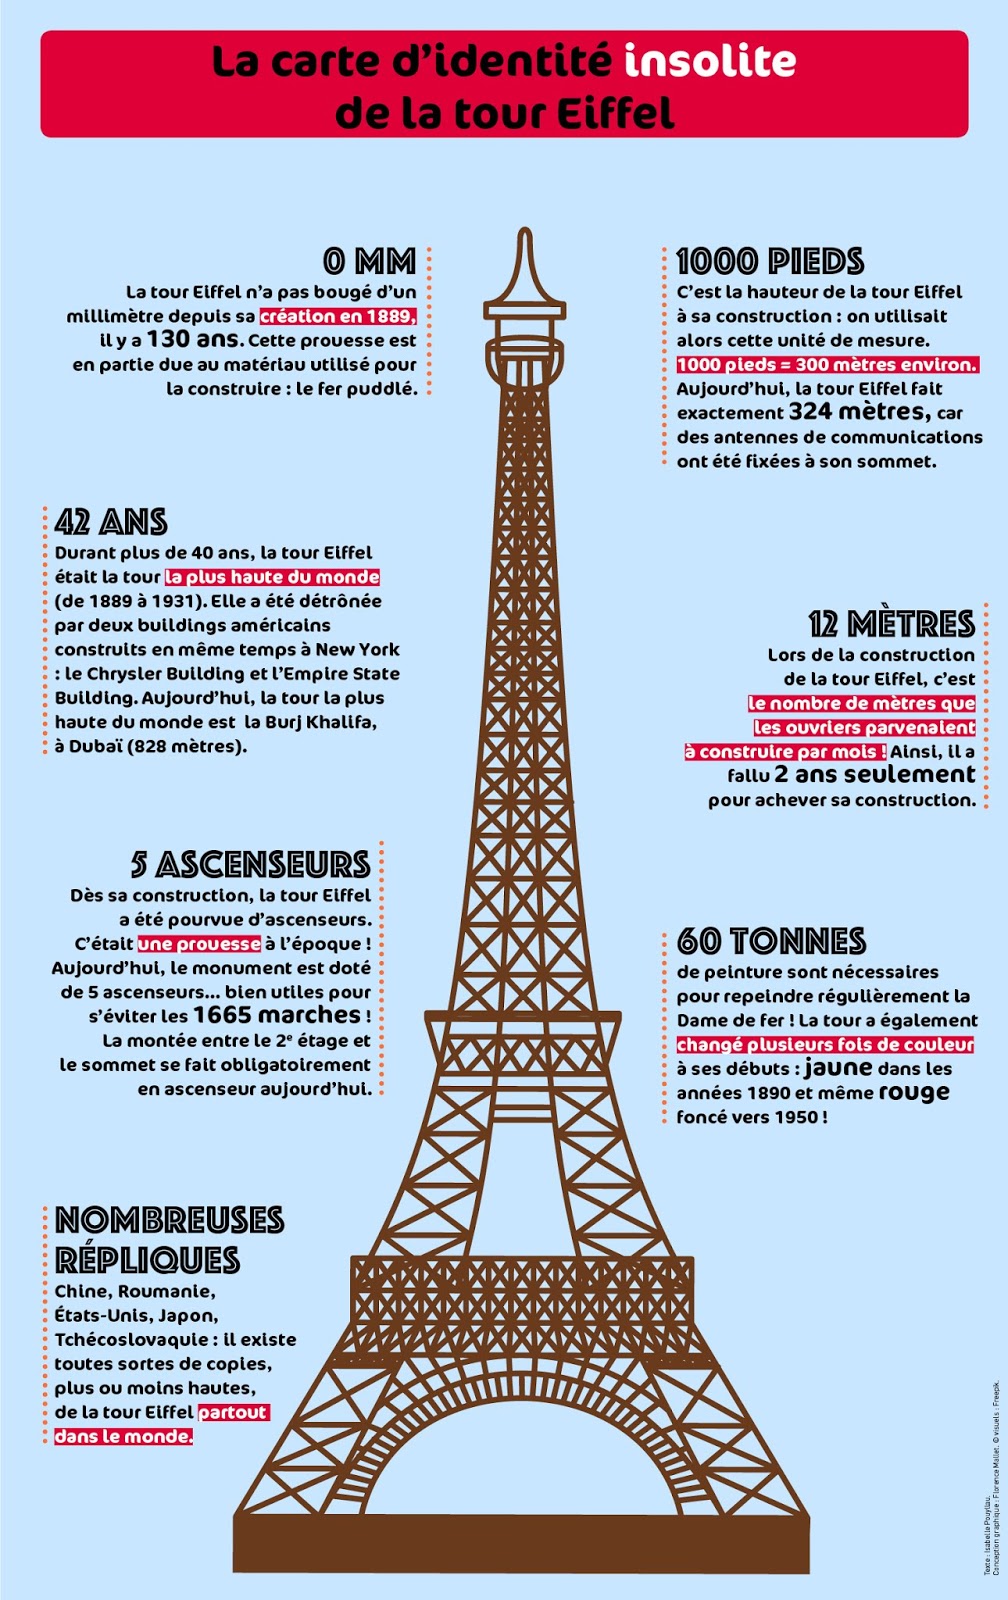 Les répliques de la Tour Eiffel dans le monde